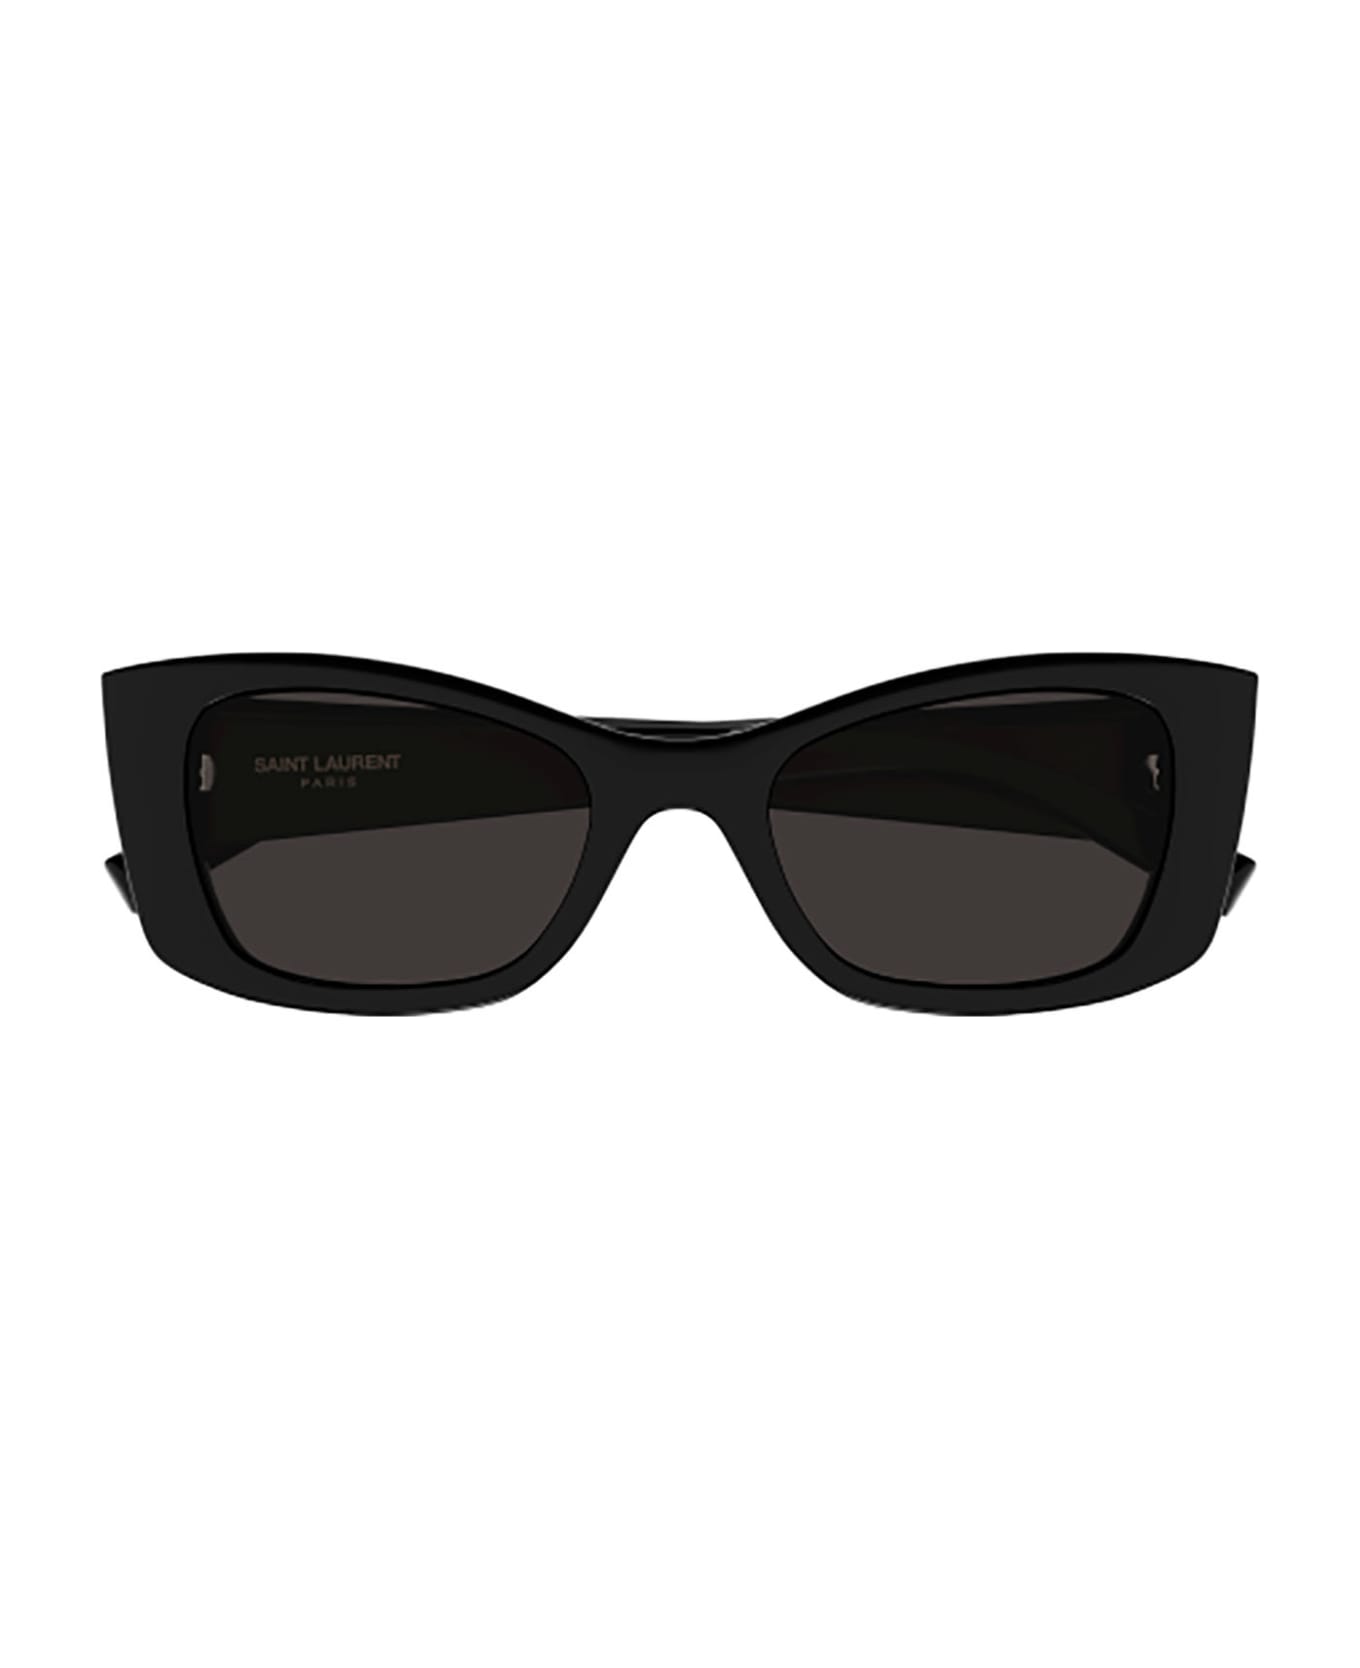 Saint Laurent Eyewear Sl 593 Sunglasses - 001 black black black サングラス